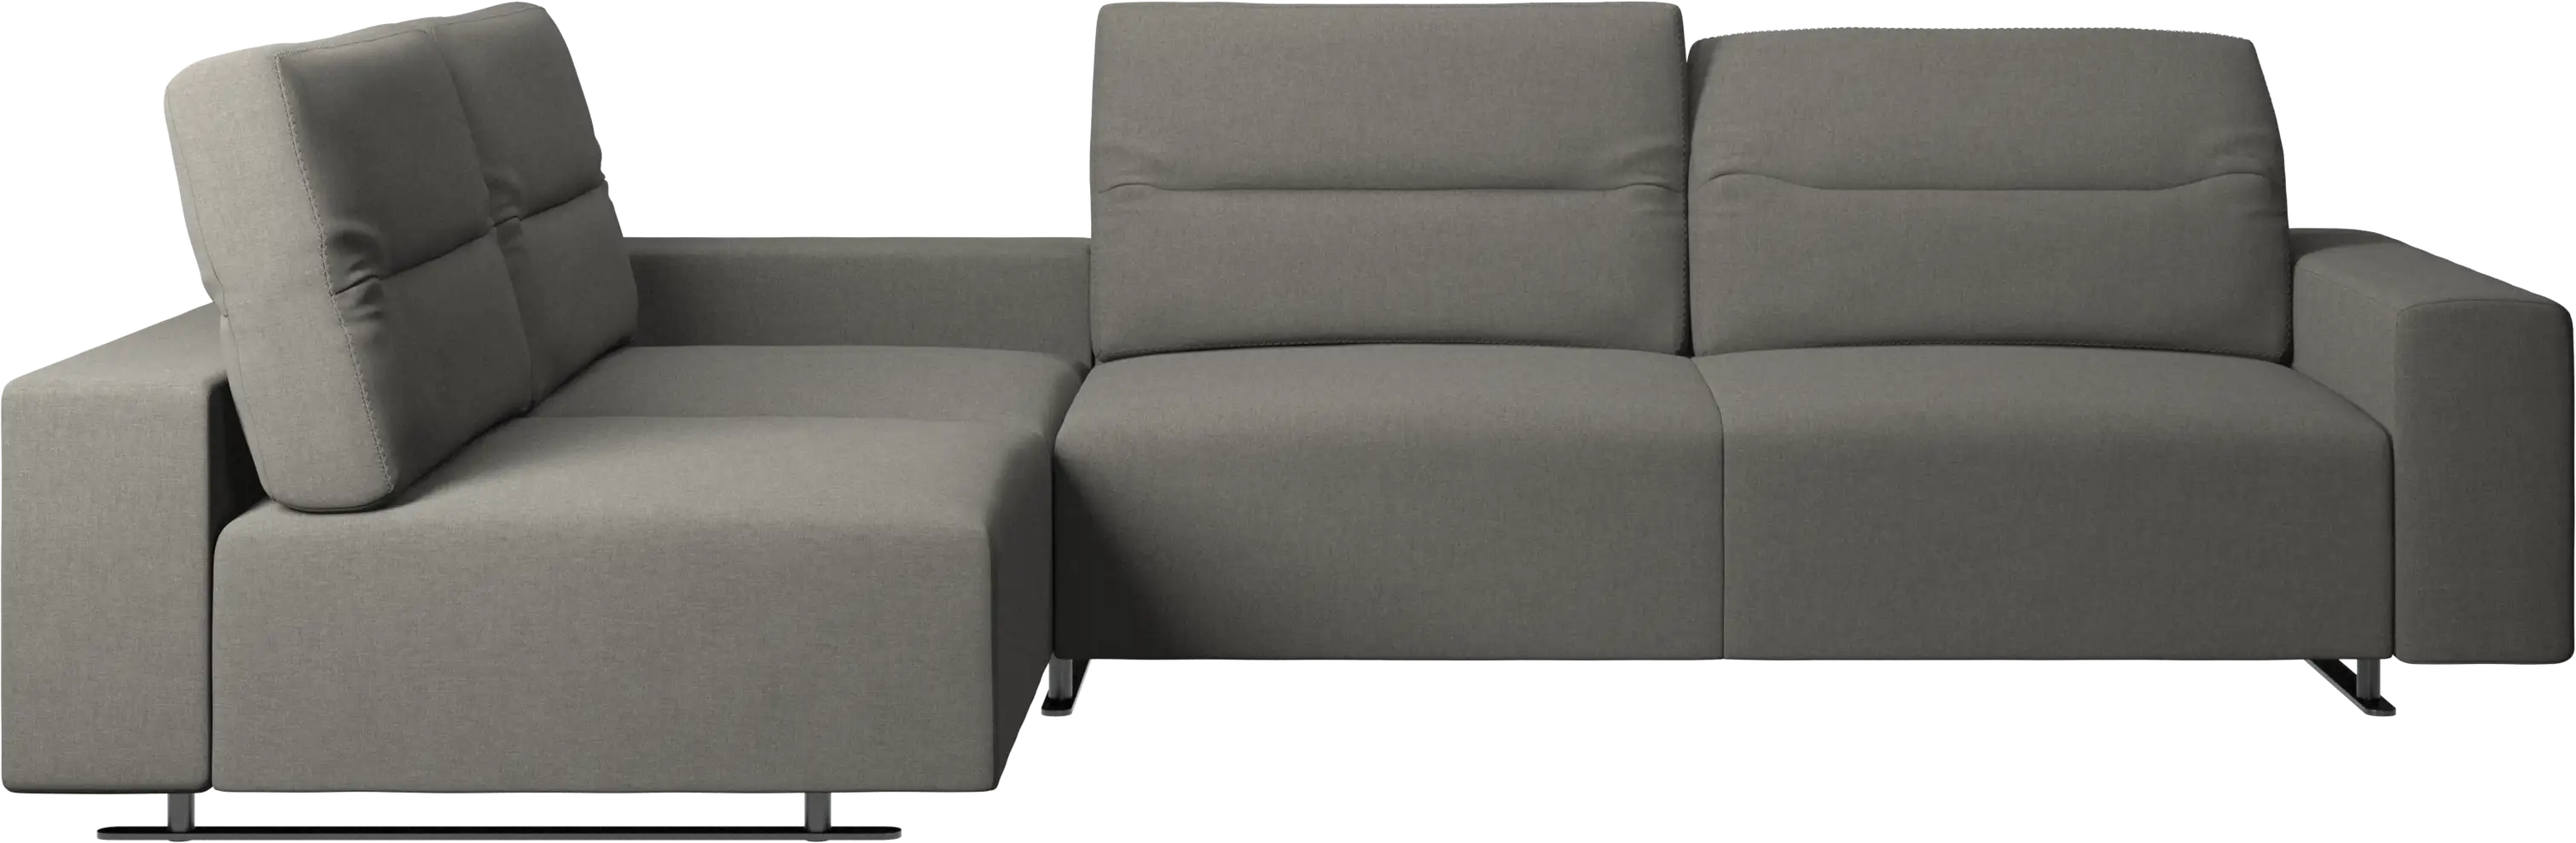 Γωνιακός καναπές Hampton με ρυθμιζόμενη πλάτη και αποθηκευτικό χώρο στη δεξιά πλευρά